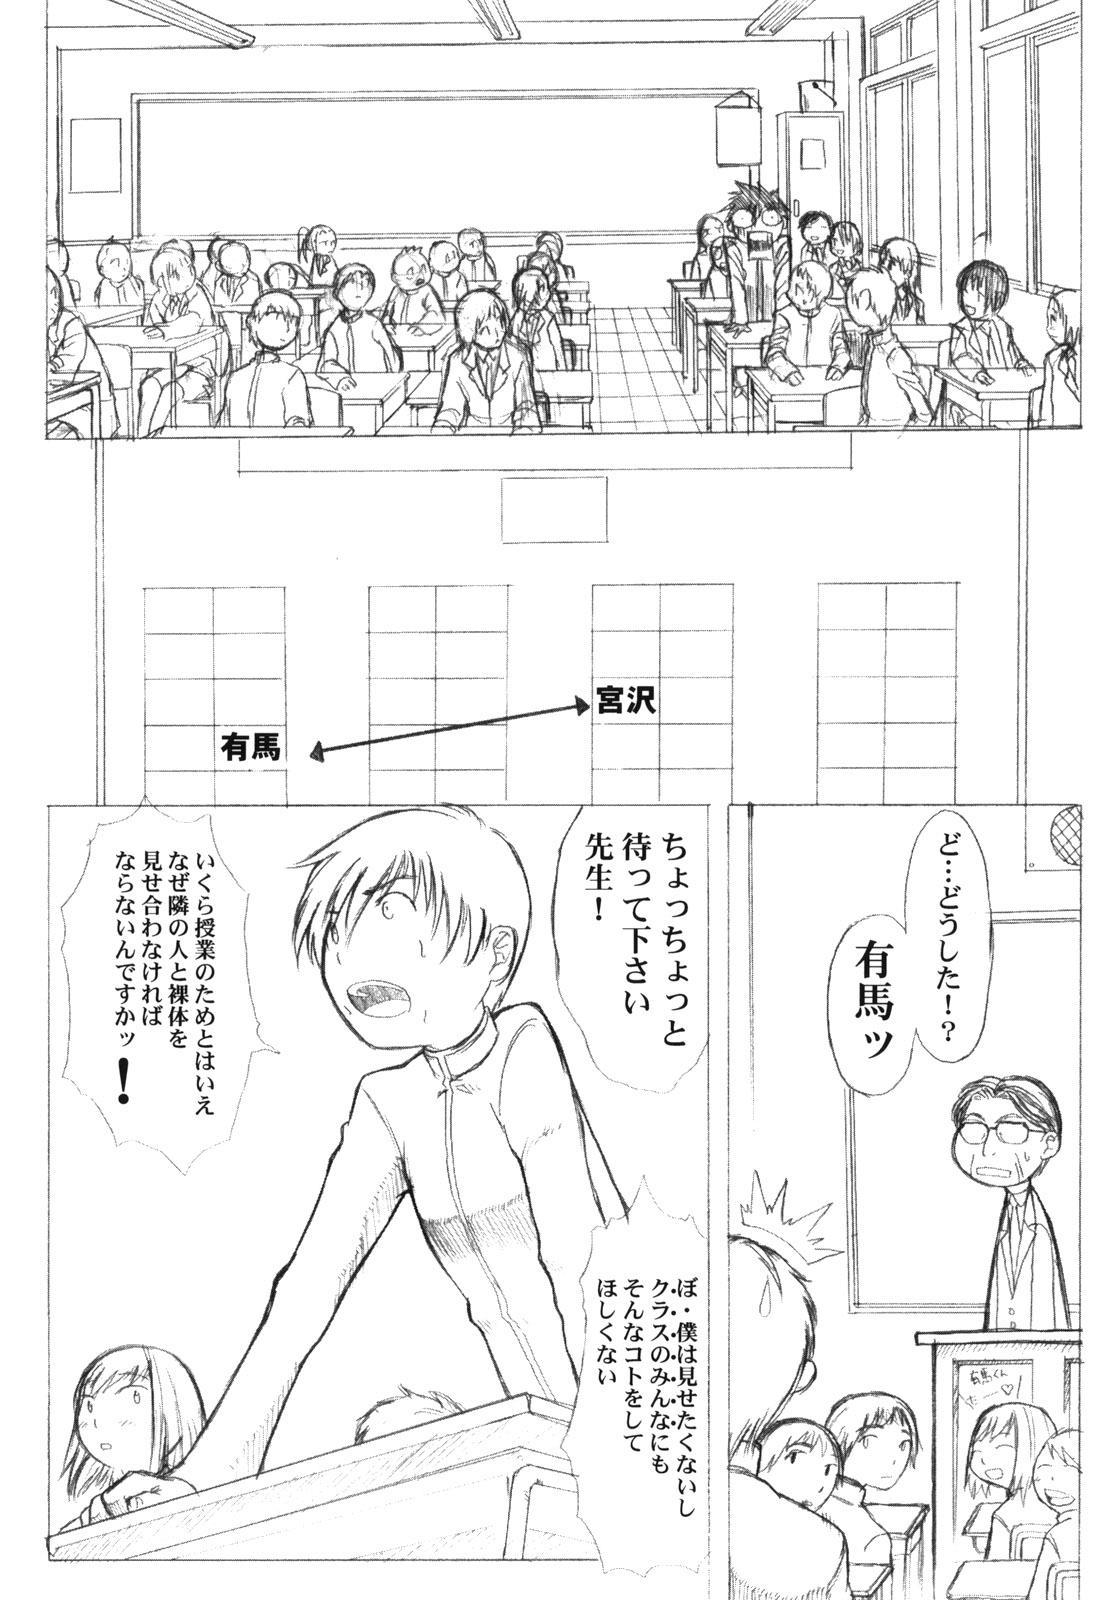 Cdmx KANOMATSURI - Sakura taisen Kare kano Ninfeta - Page 12